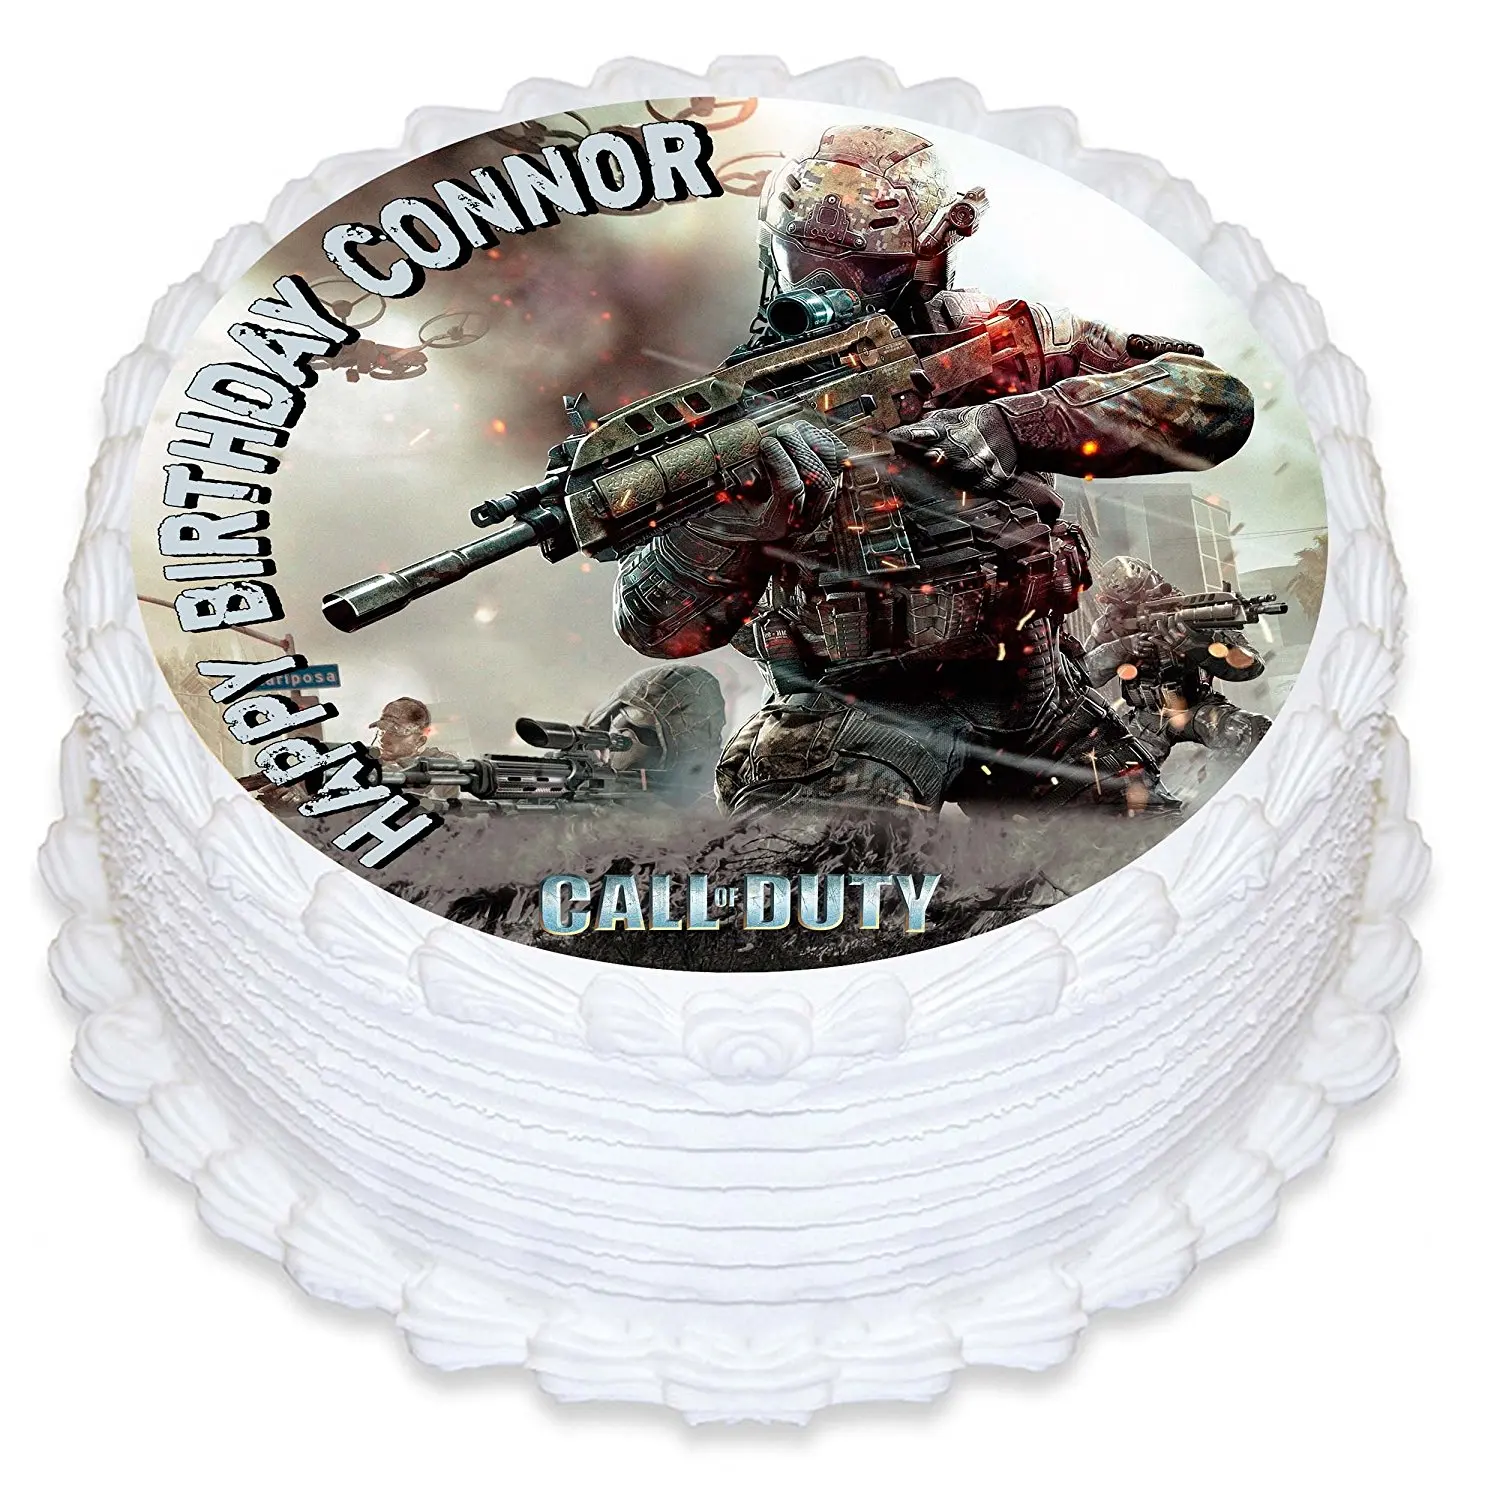 Call of duty modern warfare cake